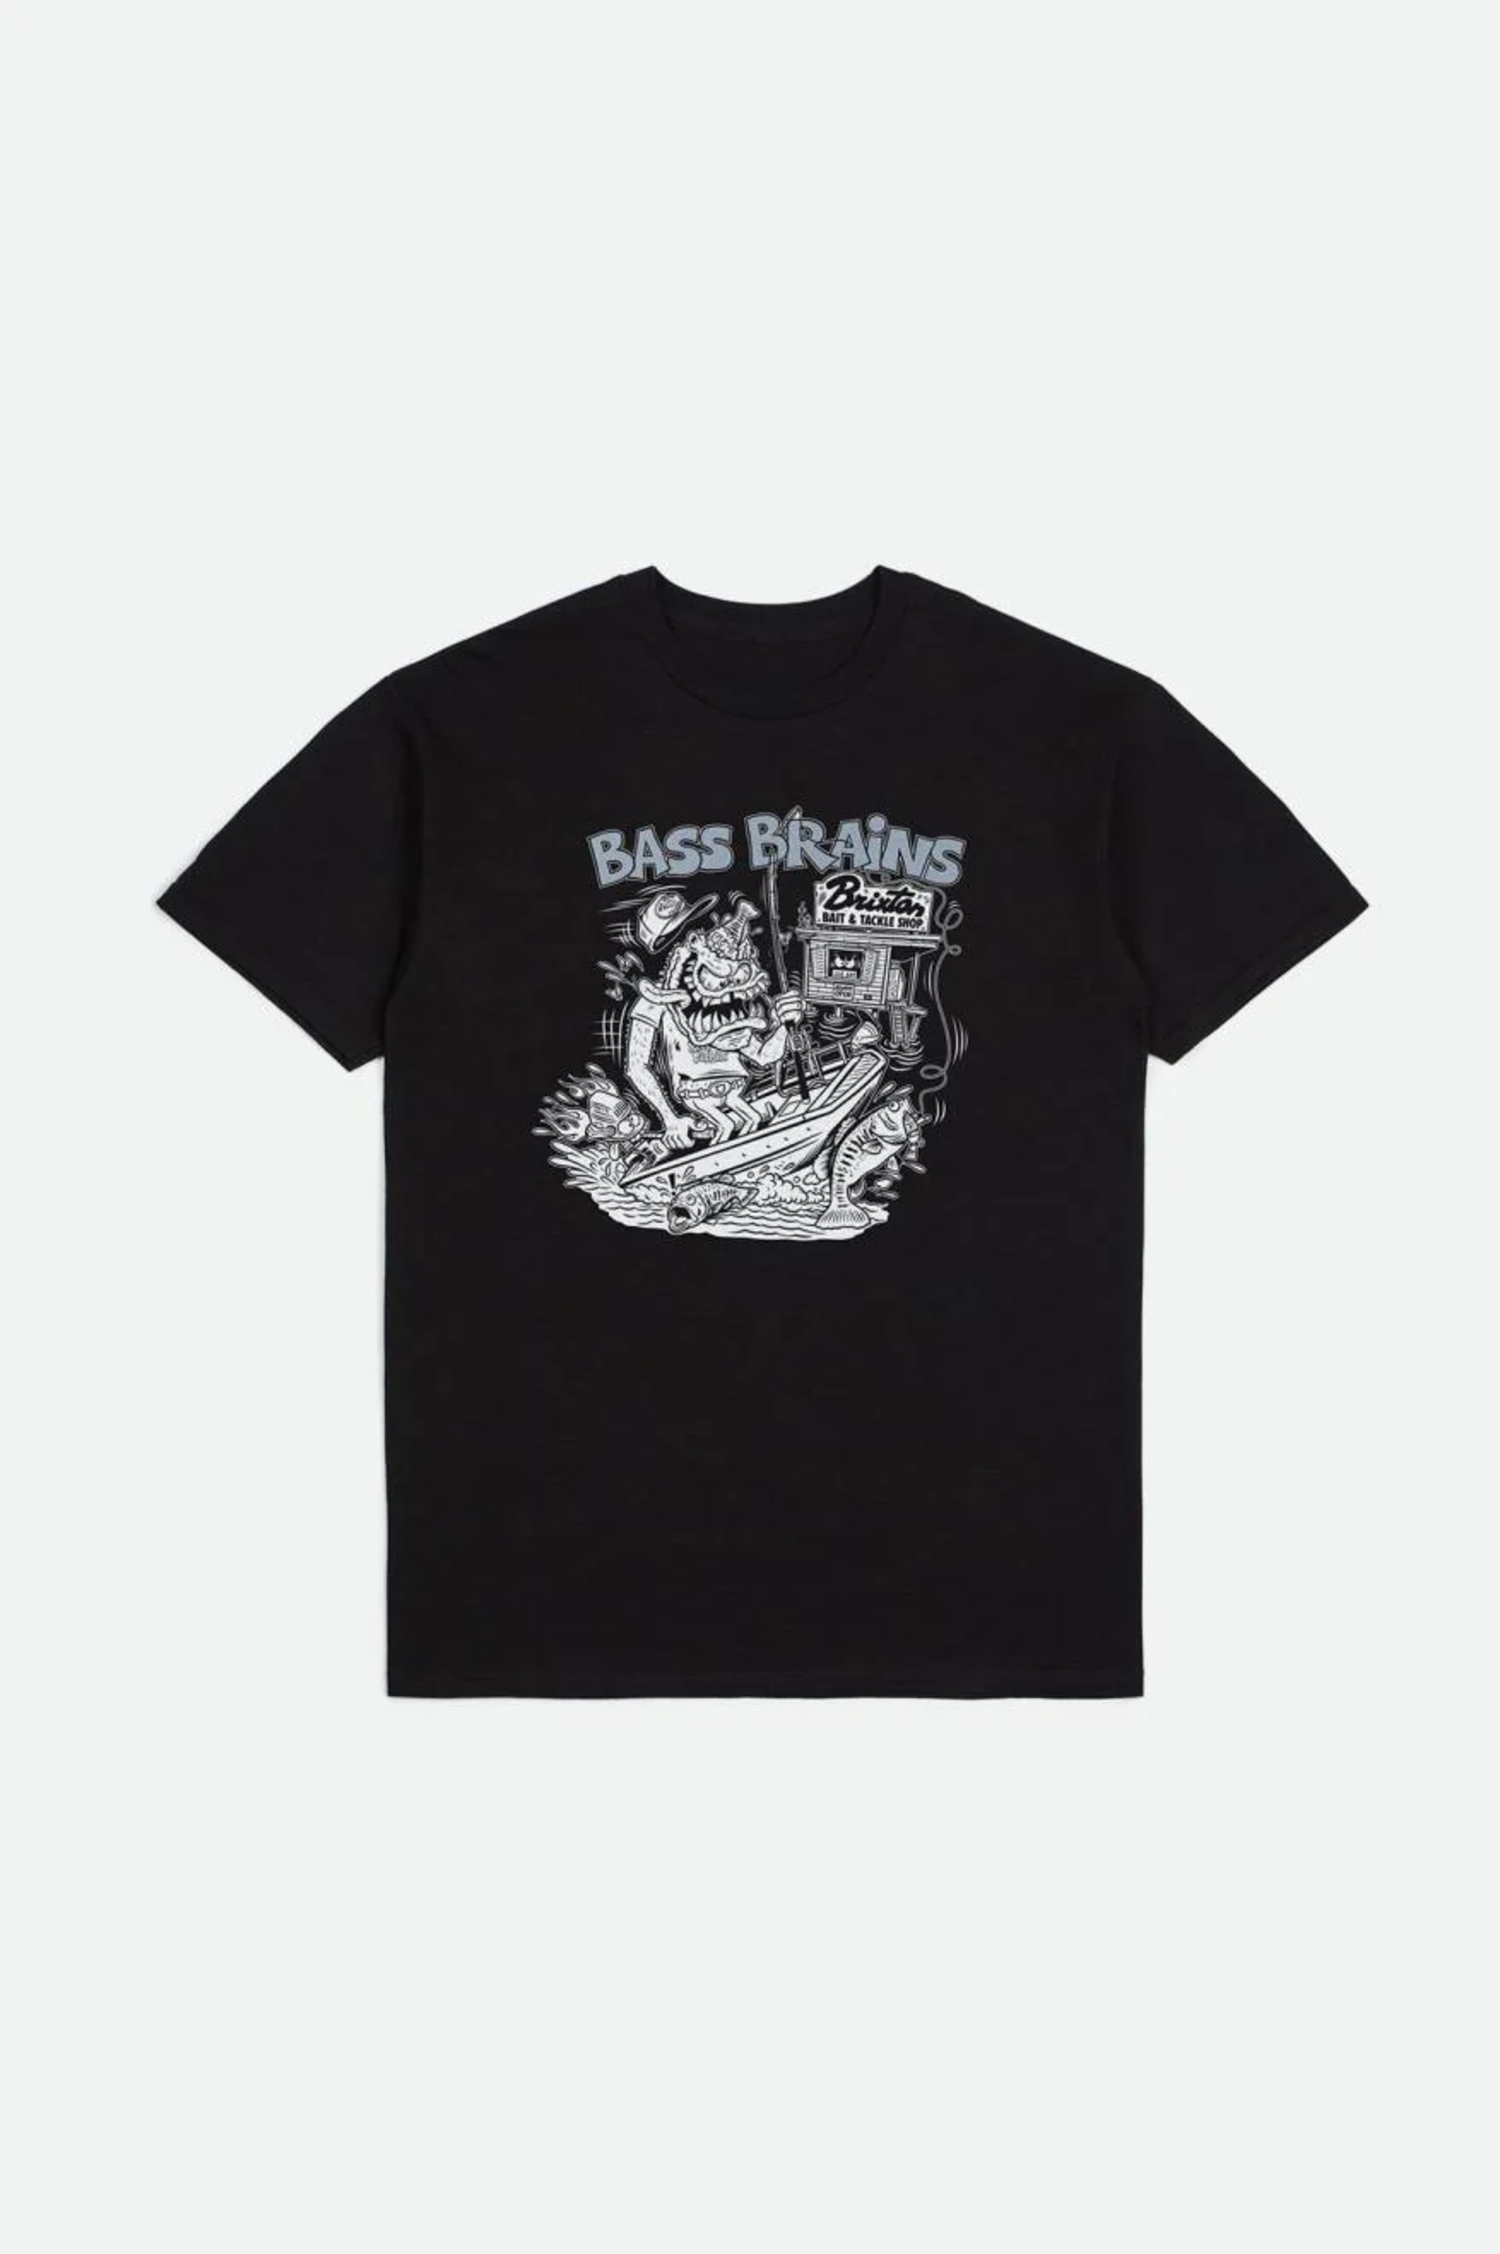 Brixton Bass Brains Swim T-Shirt - Black L